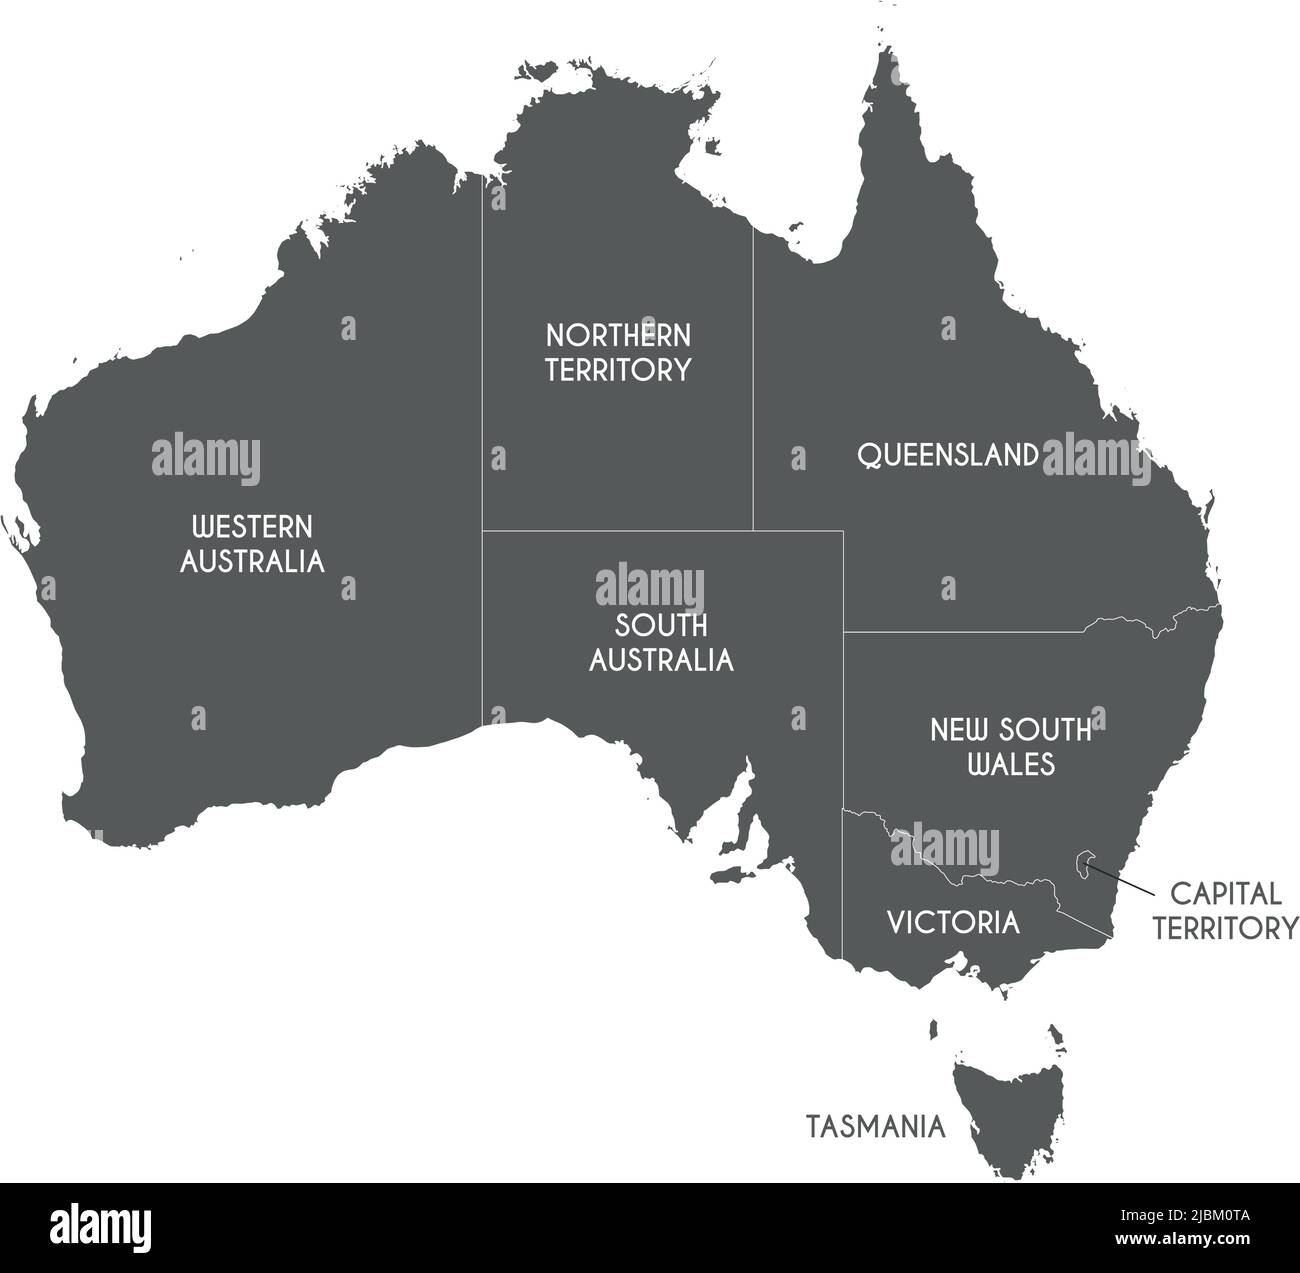 Mappa vettoriale dell'Australia con regioni o territori e divisioni amministrative. Livelli modificabili e chiaramente etichettati. Illustrazione Vettoriale